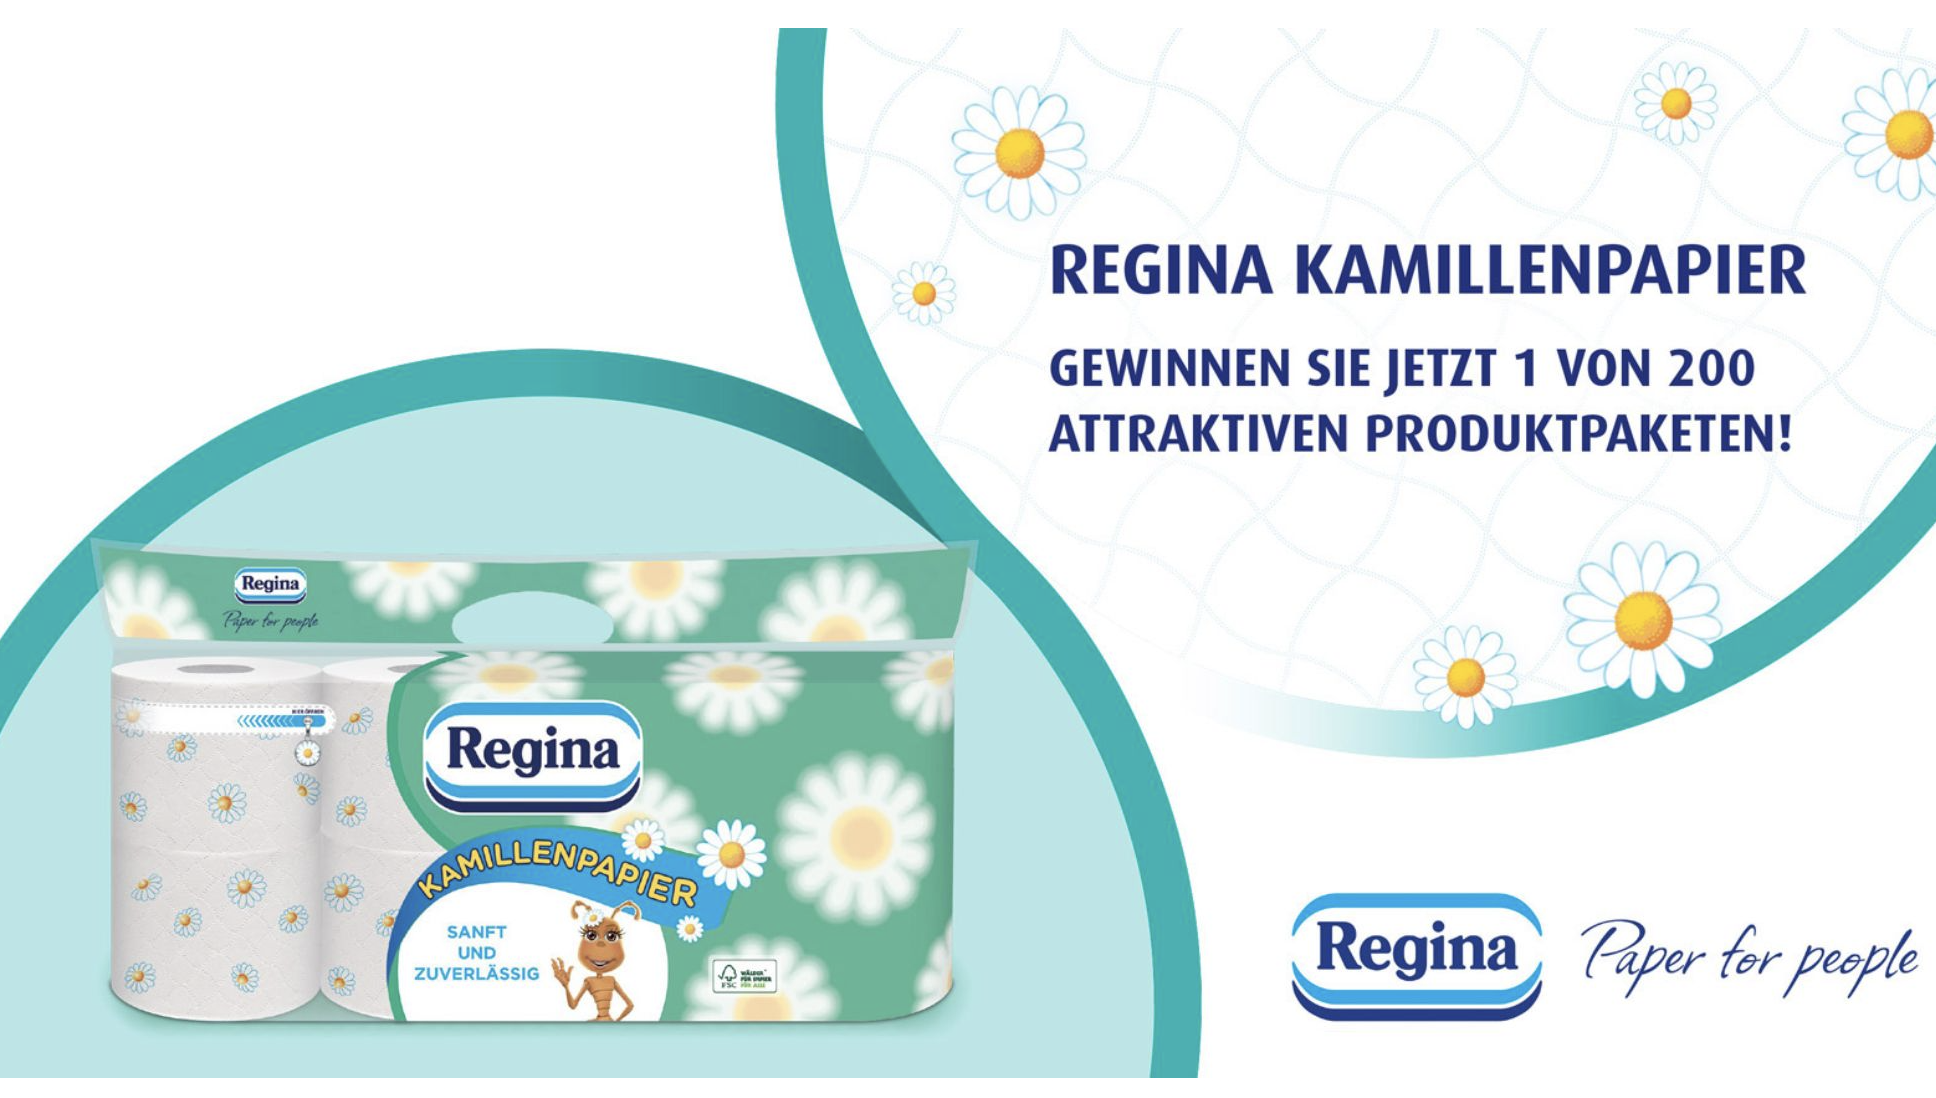 Rossmann Gewinnspiel: Regina Produktpakete zu gewinnen